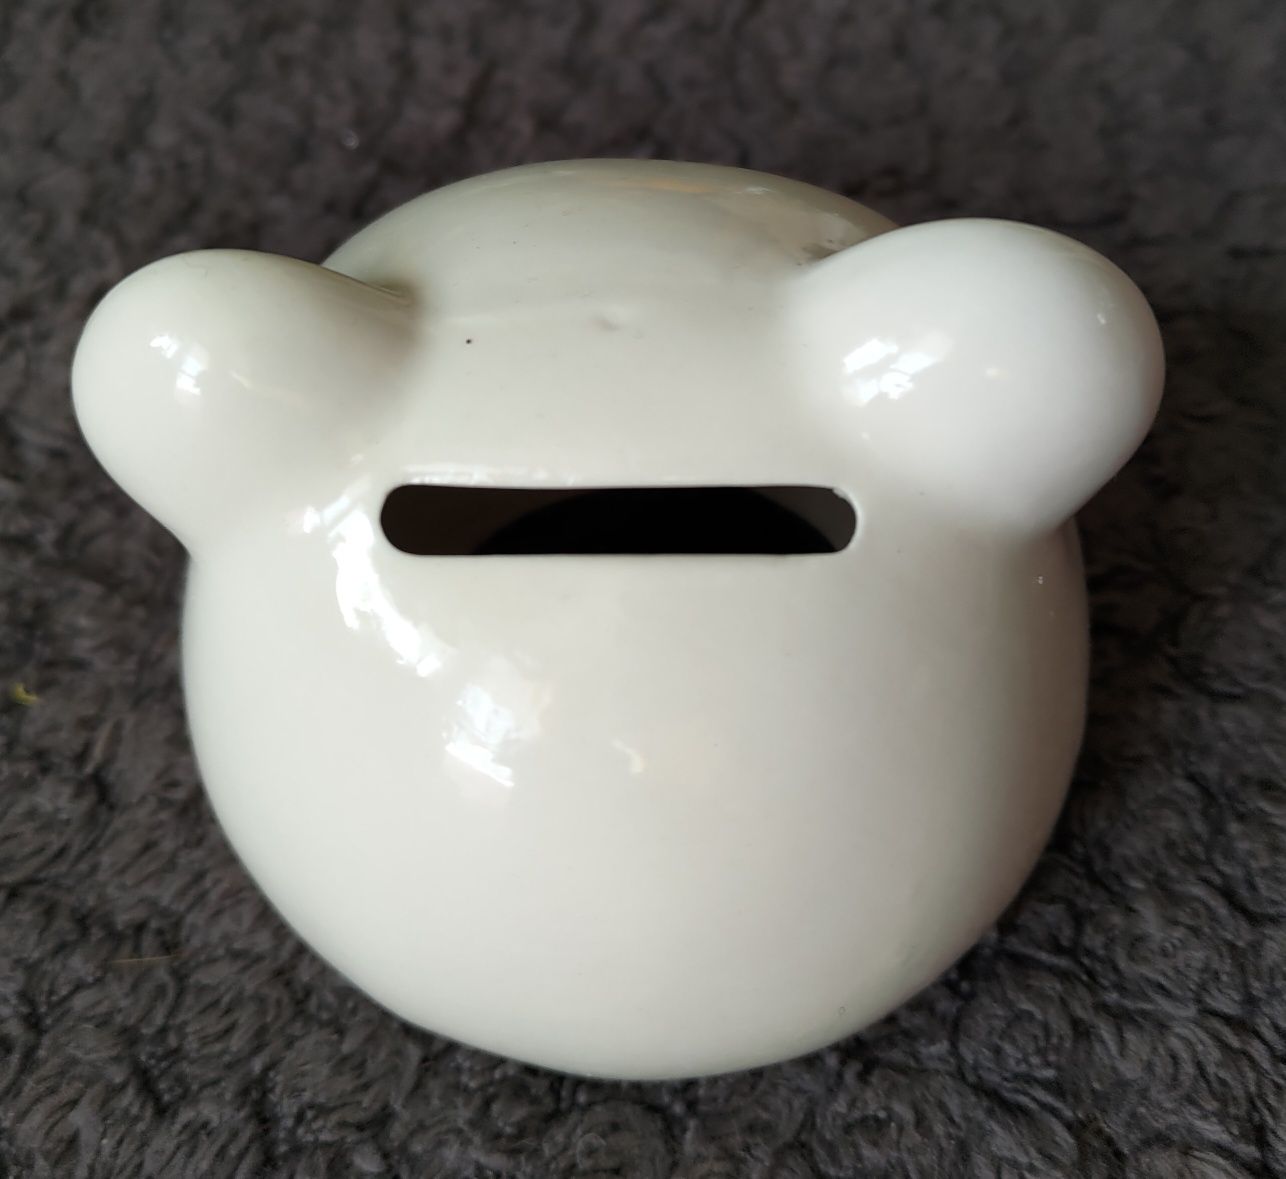 Miś panda ceramiczna skarbonka idealna na Mikołajkowy prezent